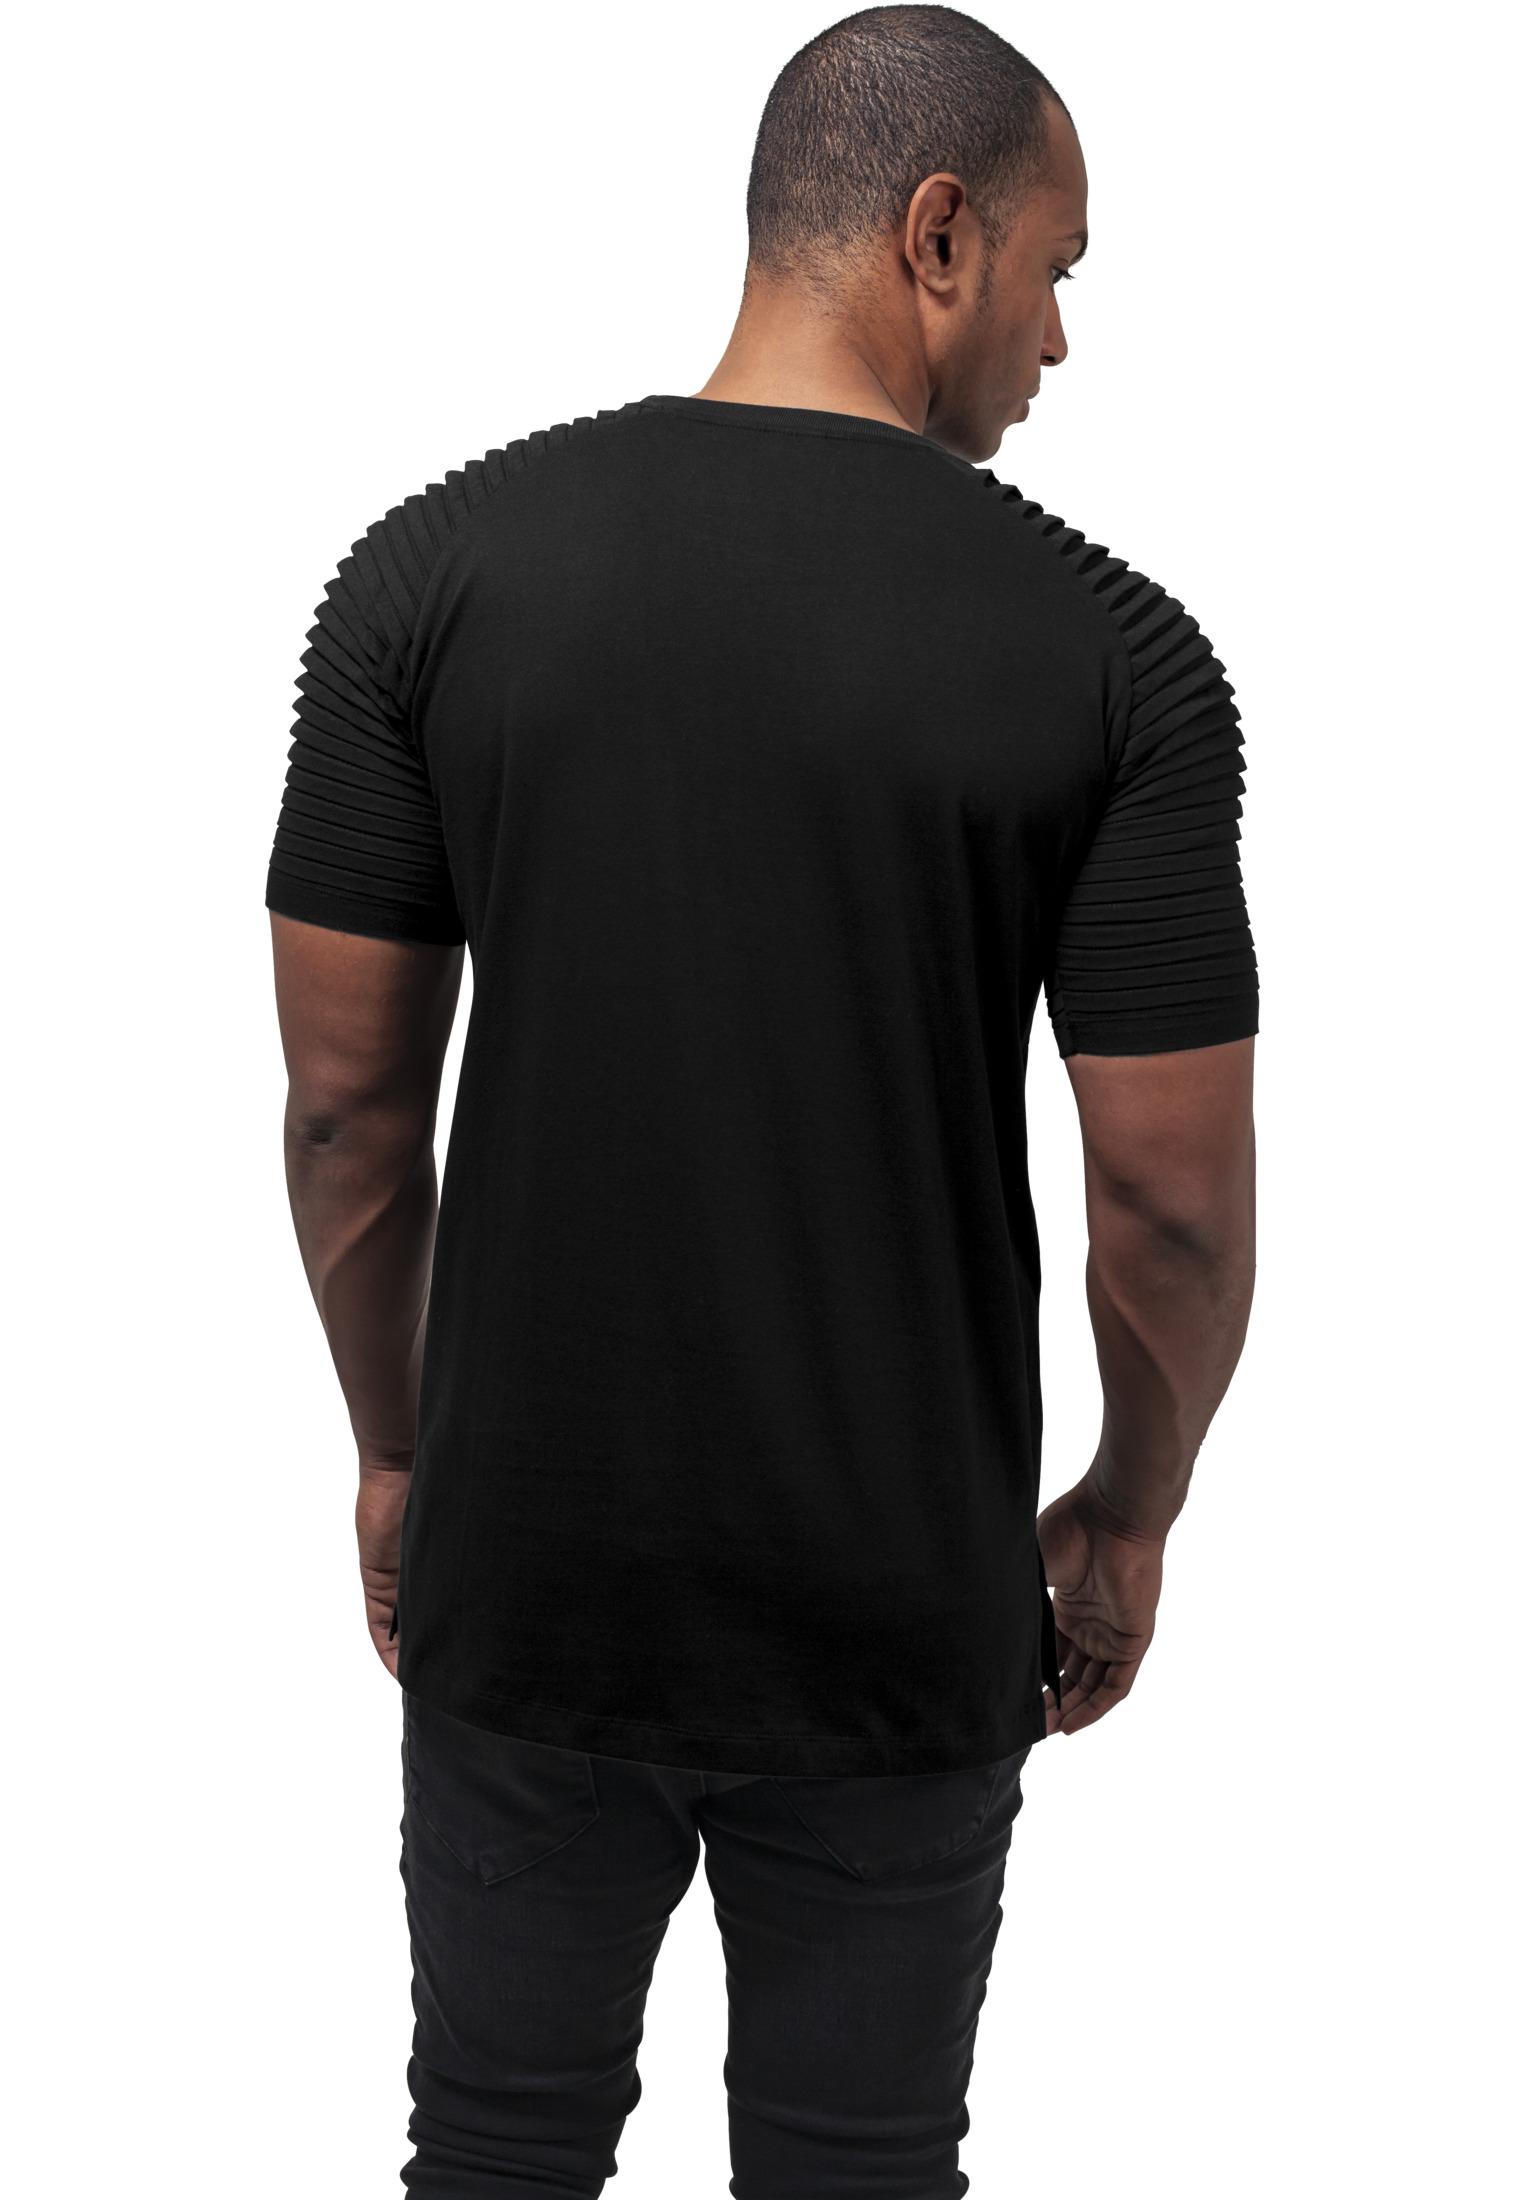 T-Shirts Pleat Raglan Tee in Farbe black